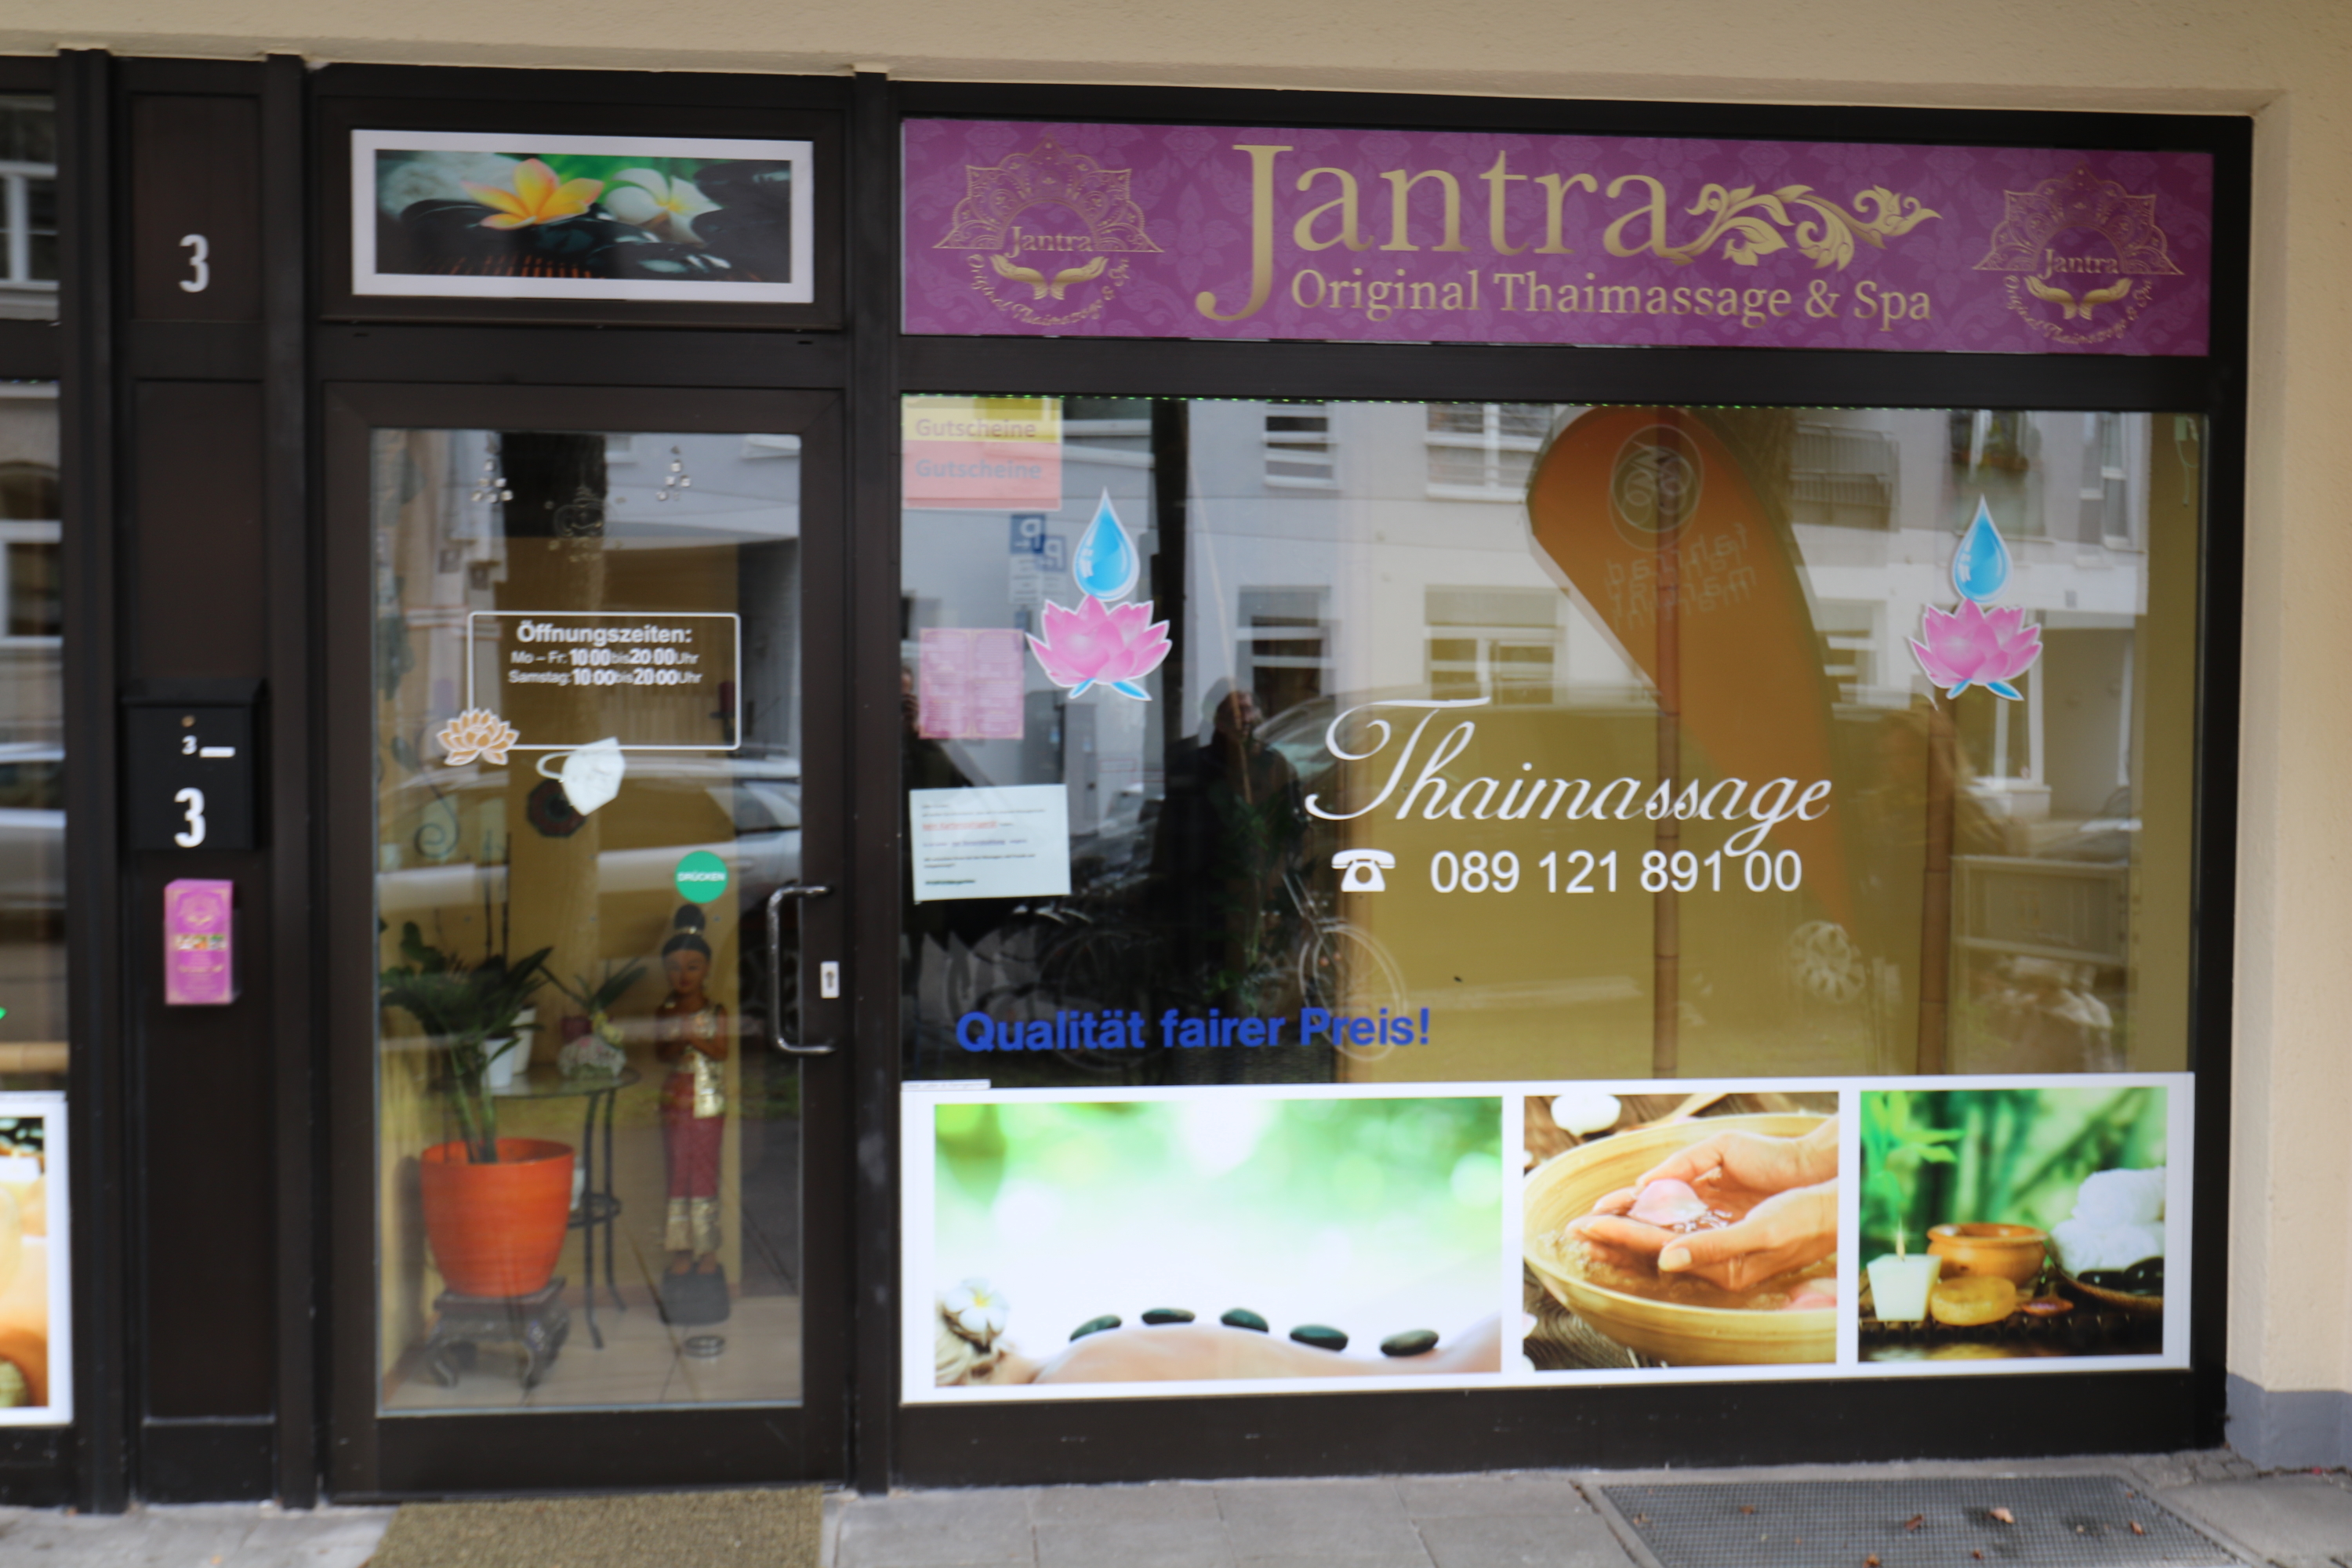 Bild 2 Jantra Original Thai Massage & Spa in München